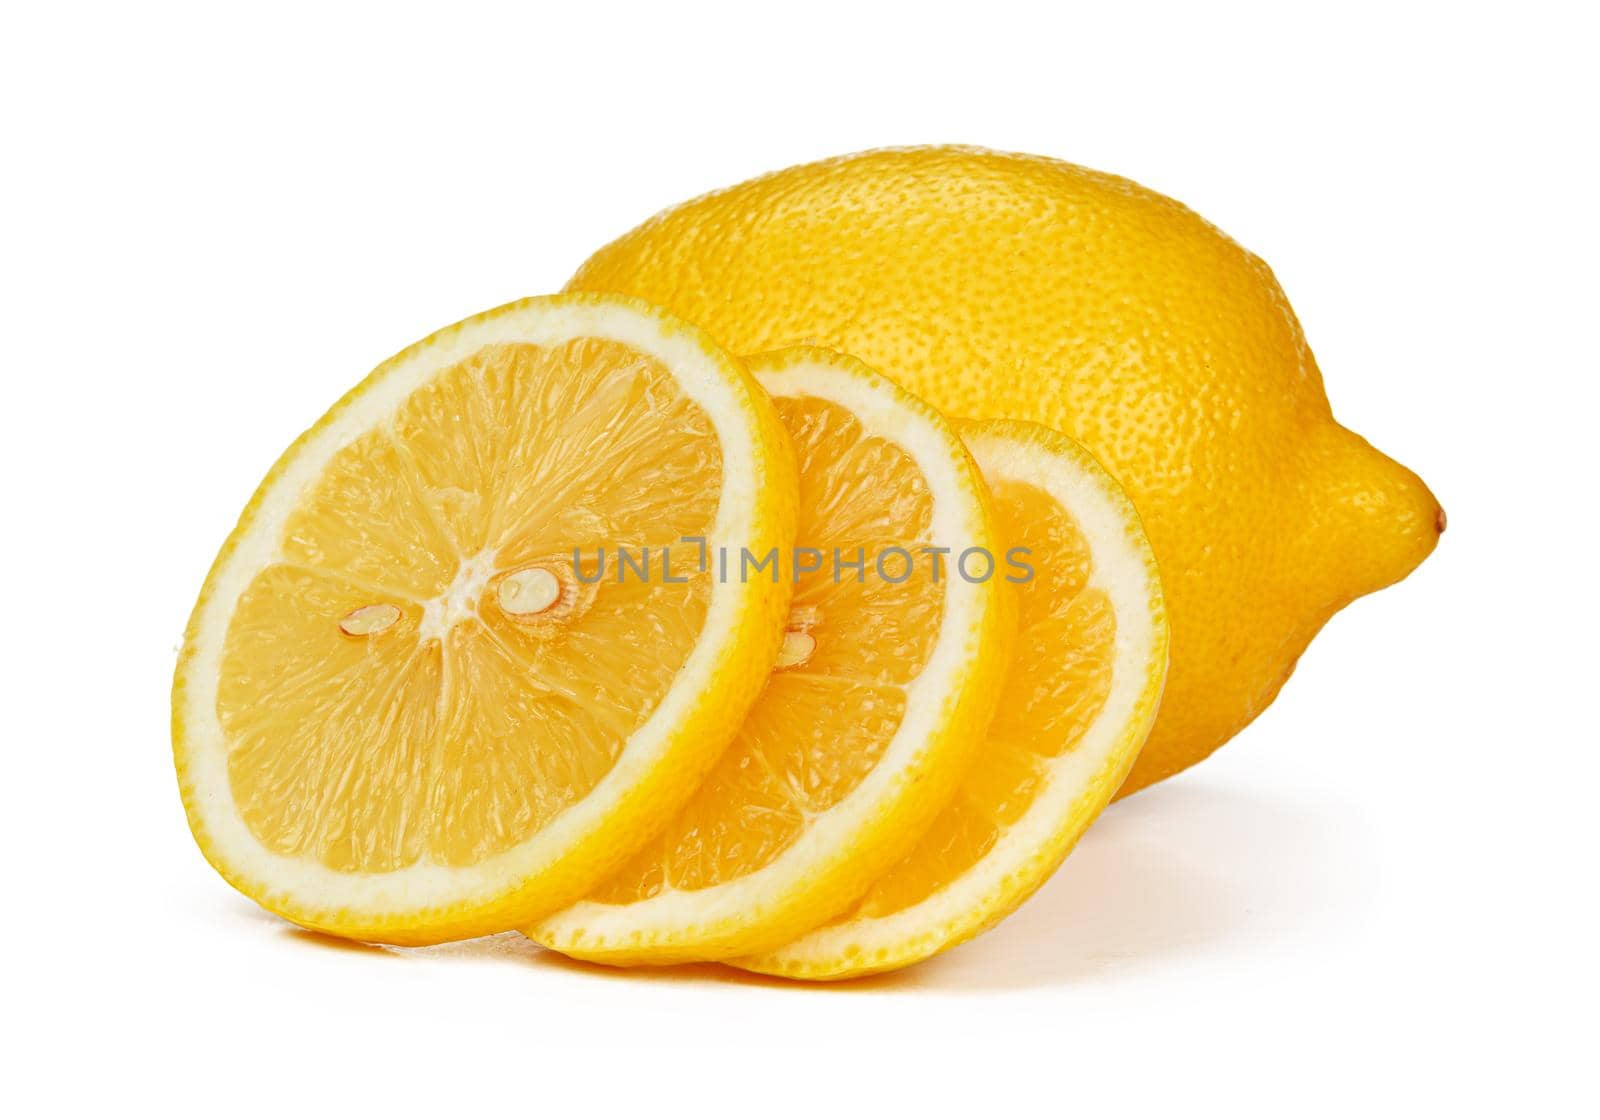 Chopped lemon fruit isolated on white background. High quality photo